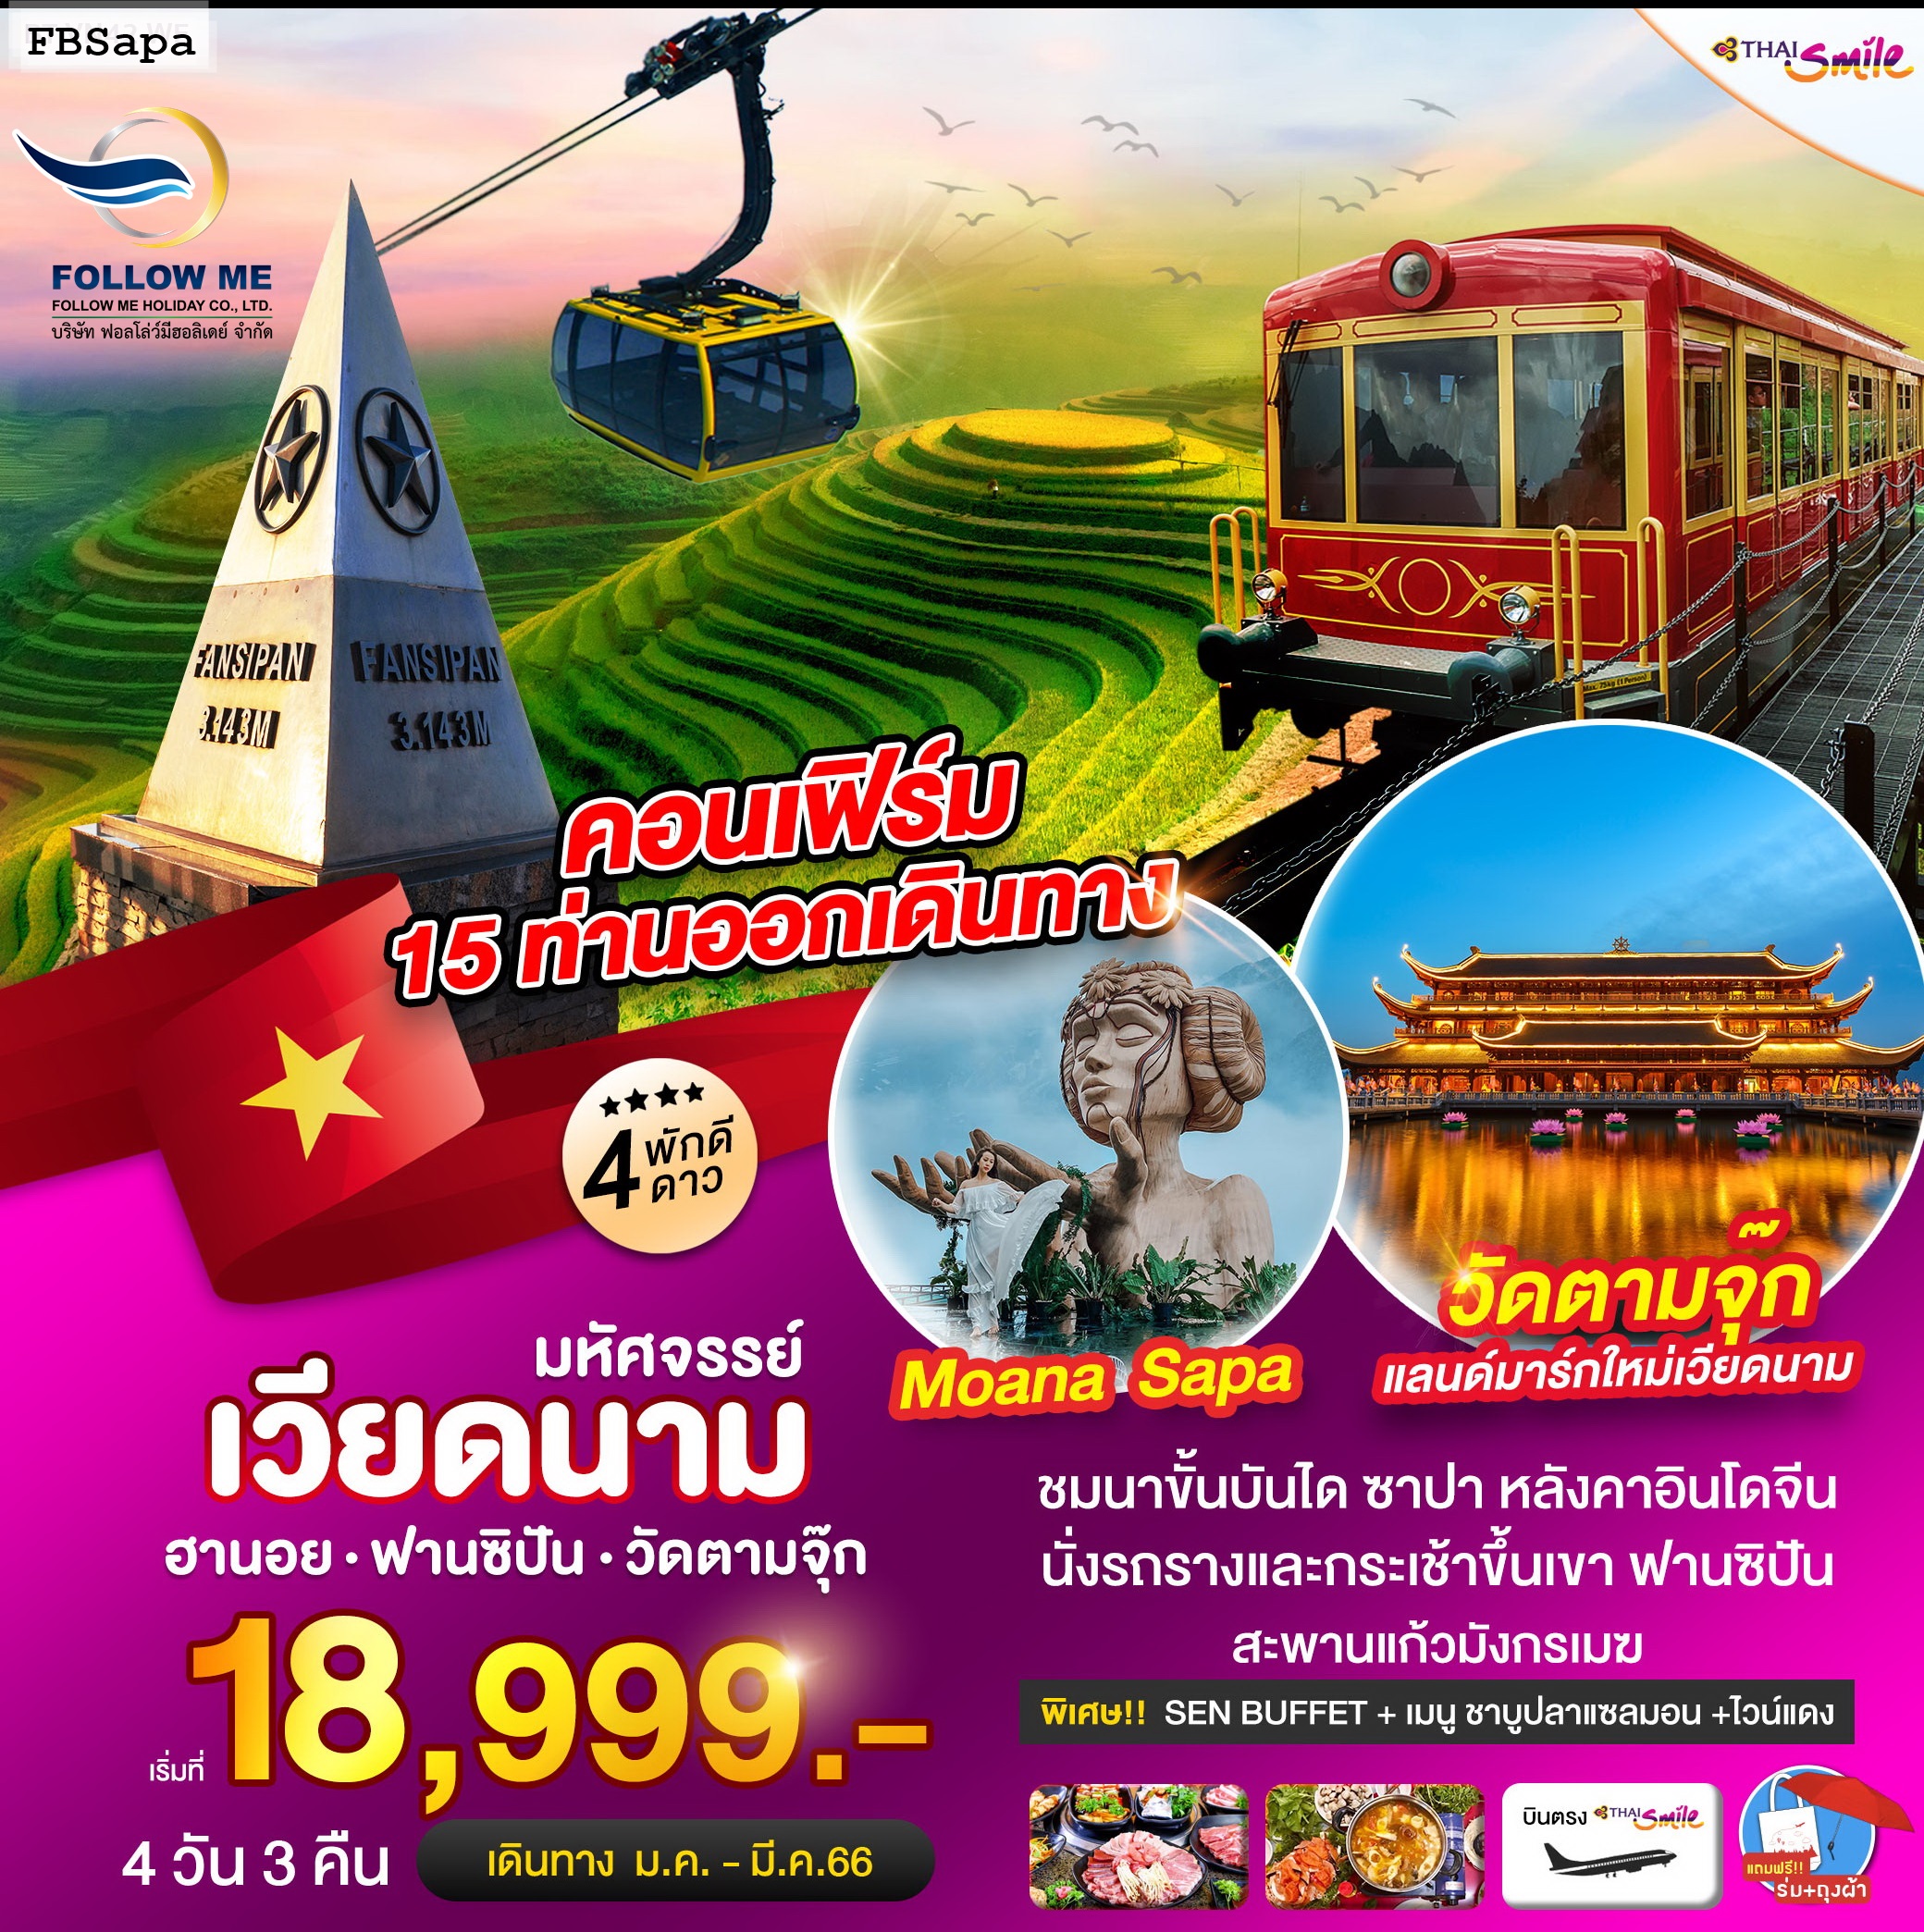 ทัวร์เวียดนาม ฮานอย ซาปา ฟานซิปัน 4 วัน 3 คืน by Thai Smile